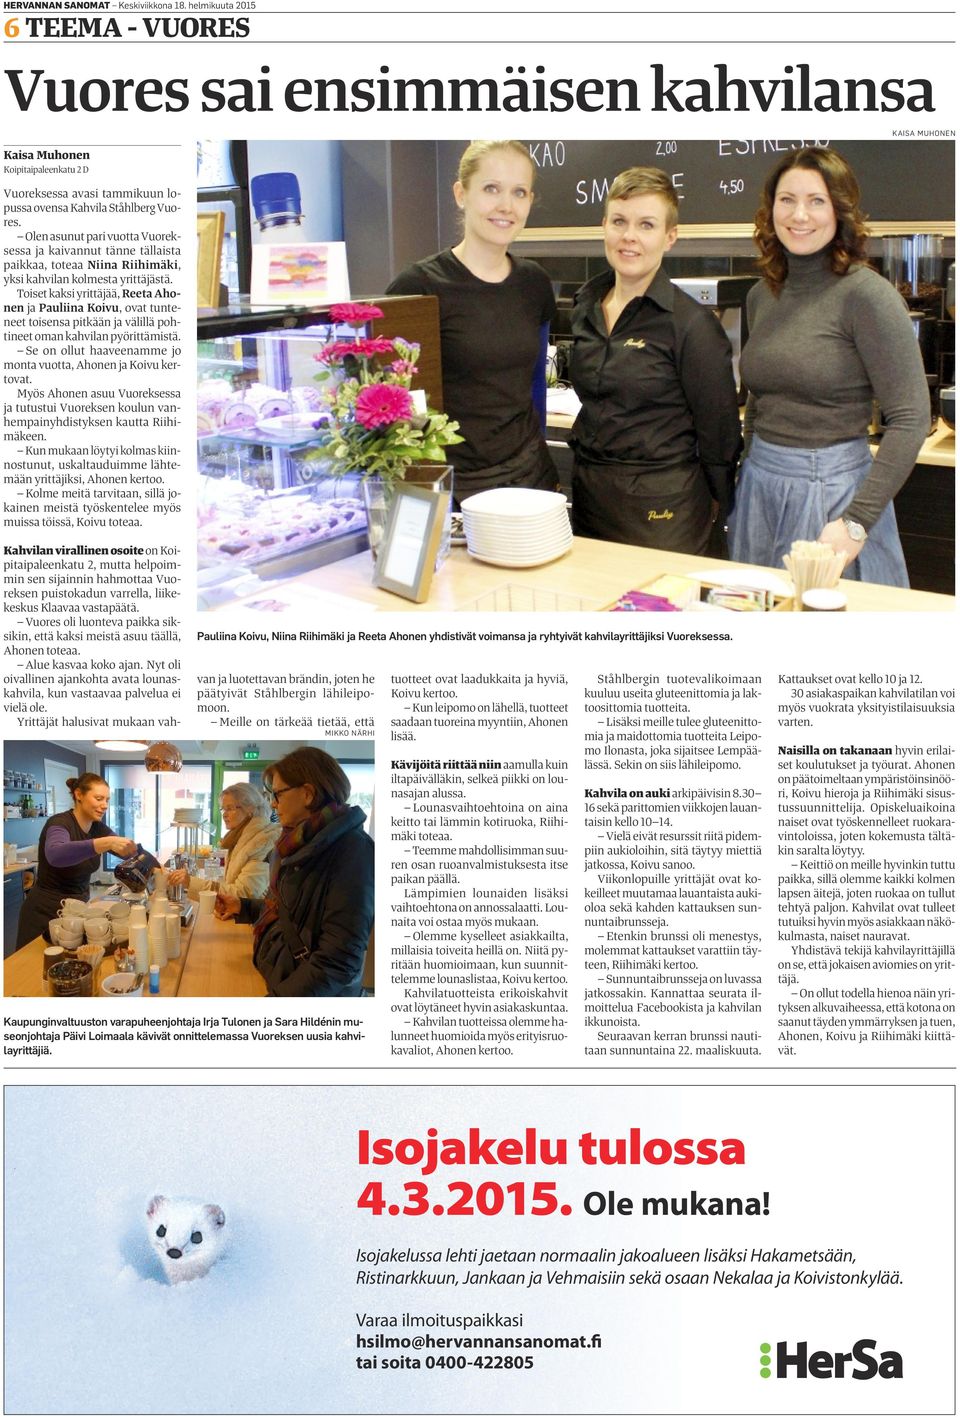 Toiset kaksi yrittäjää, Reeta Ahonen ja Pauliina Koivu, ovat tunteneet toisensa pitkään ja välillä pohtineet oman kahvilan pyörittämistä.